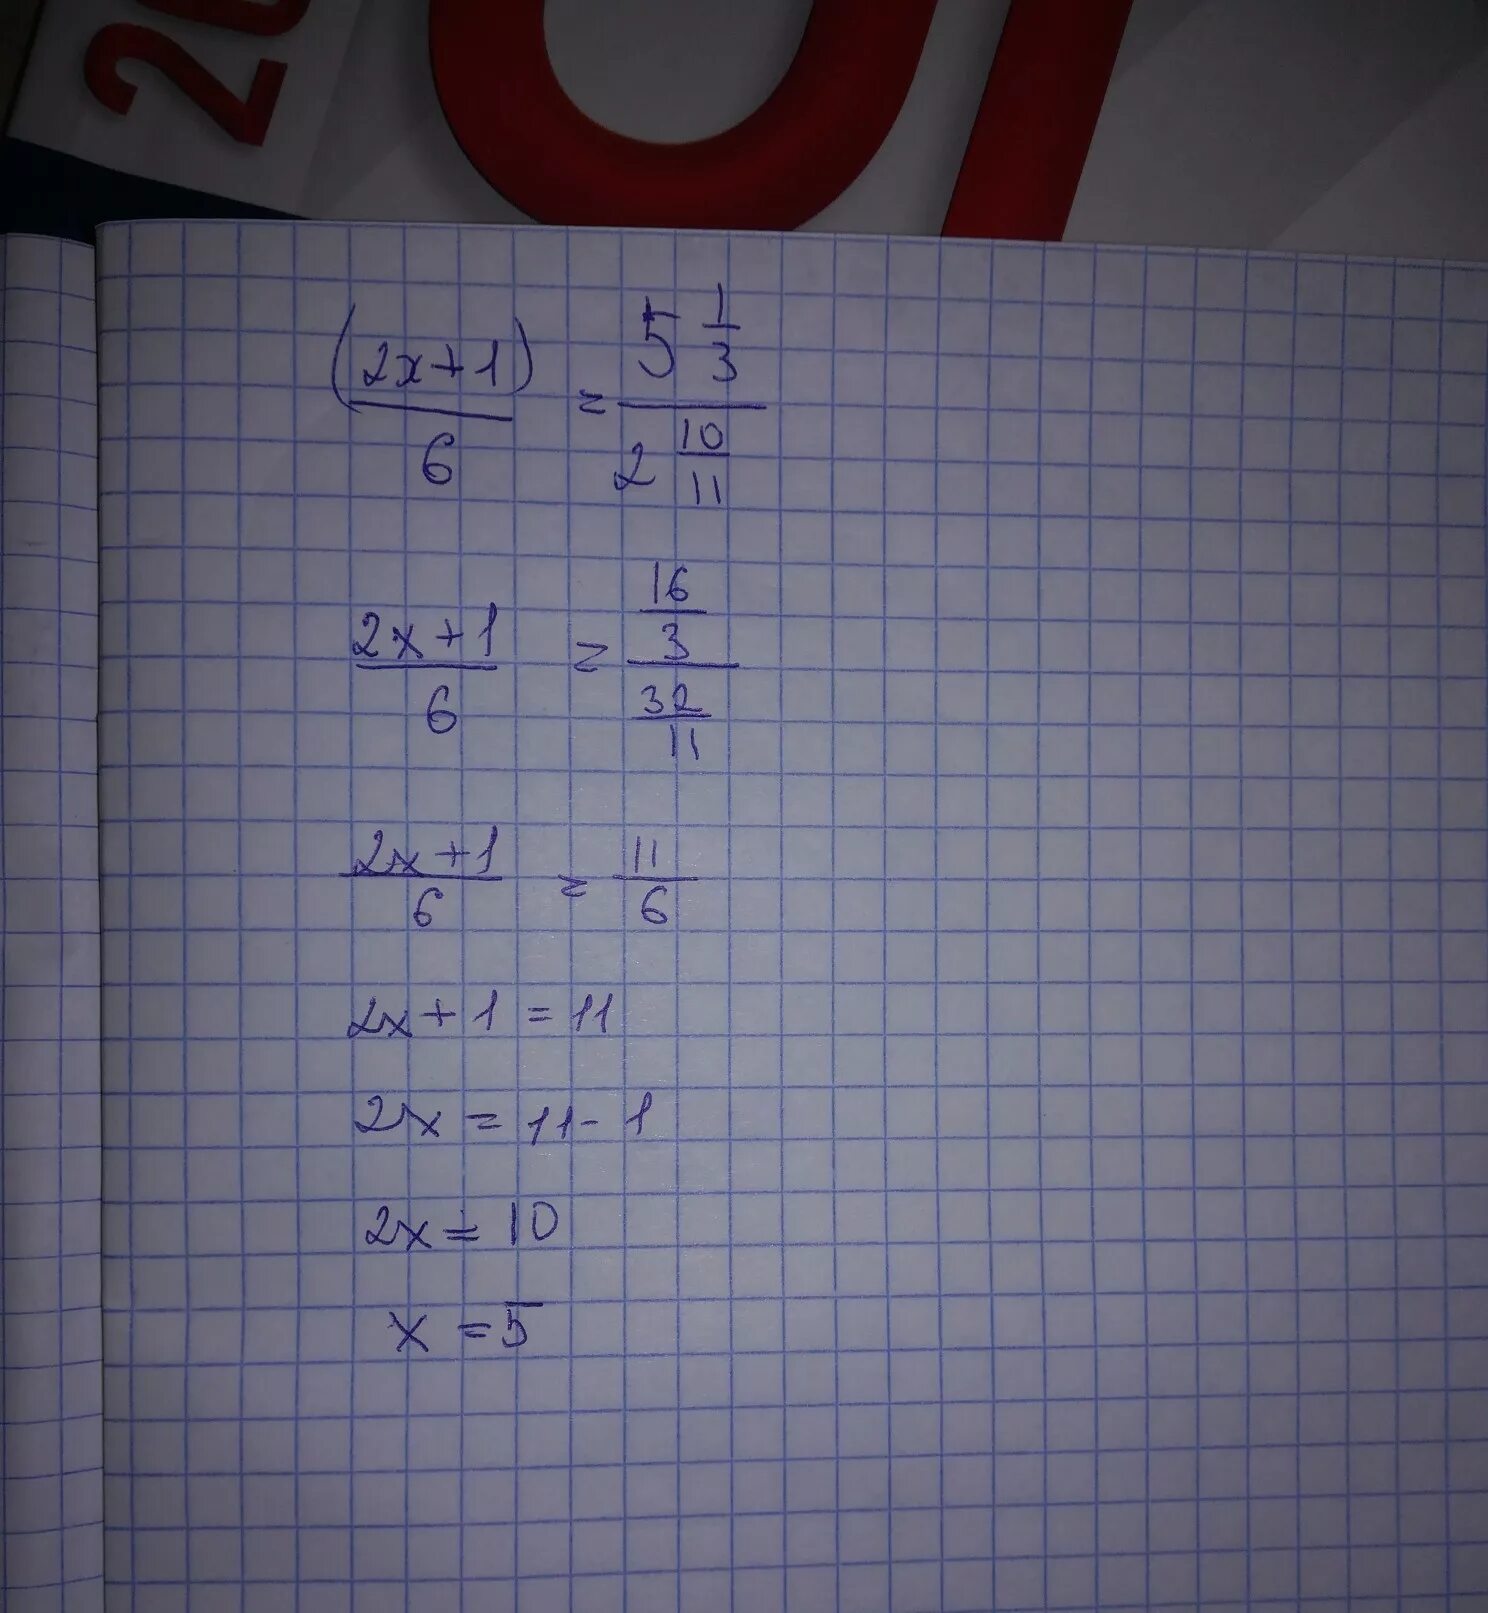 10 05 3 5. 0,5:6=1 1/6:Х. (Х-1):2-(У-1):6=5/3. Х-5,1=6,2. Решить 1,2*5,5.